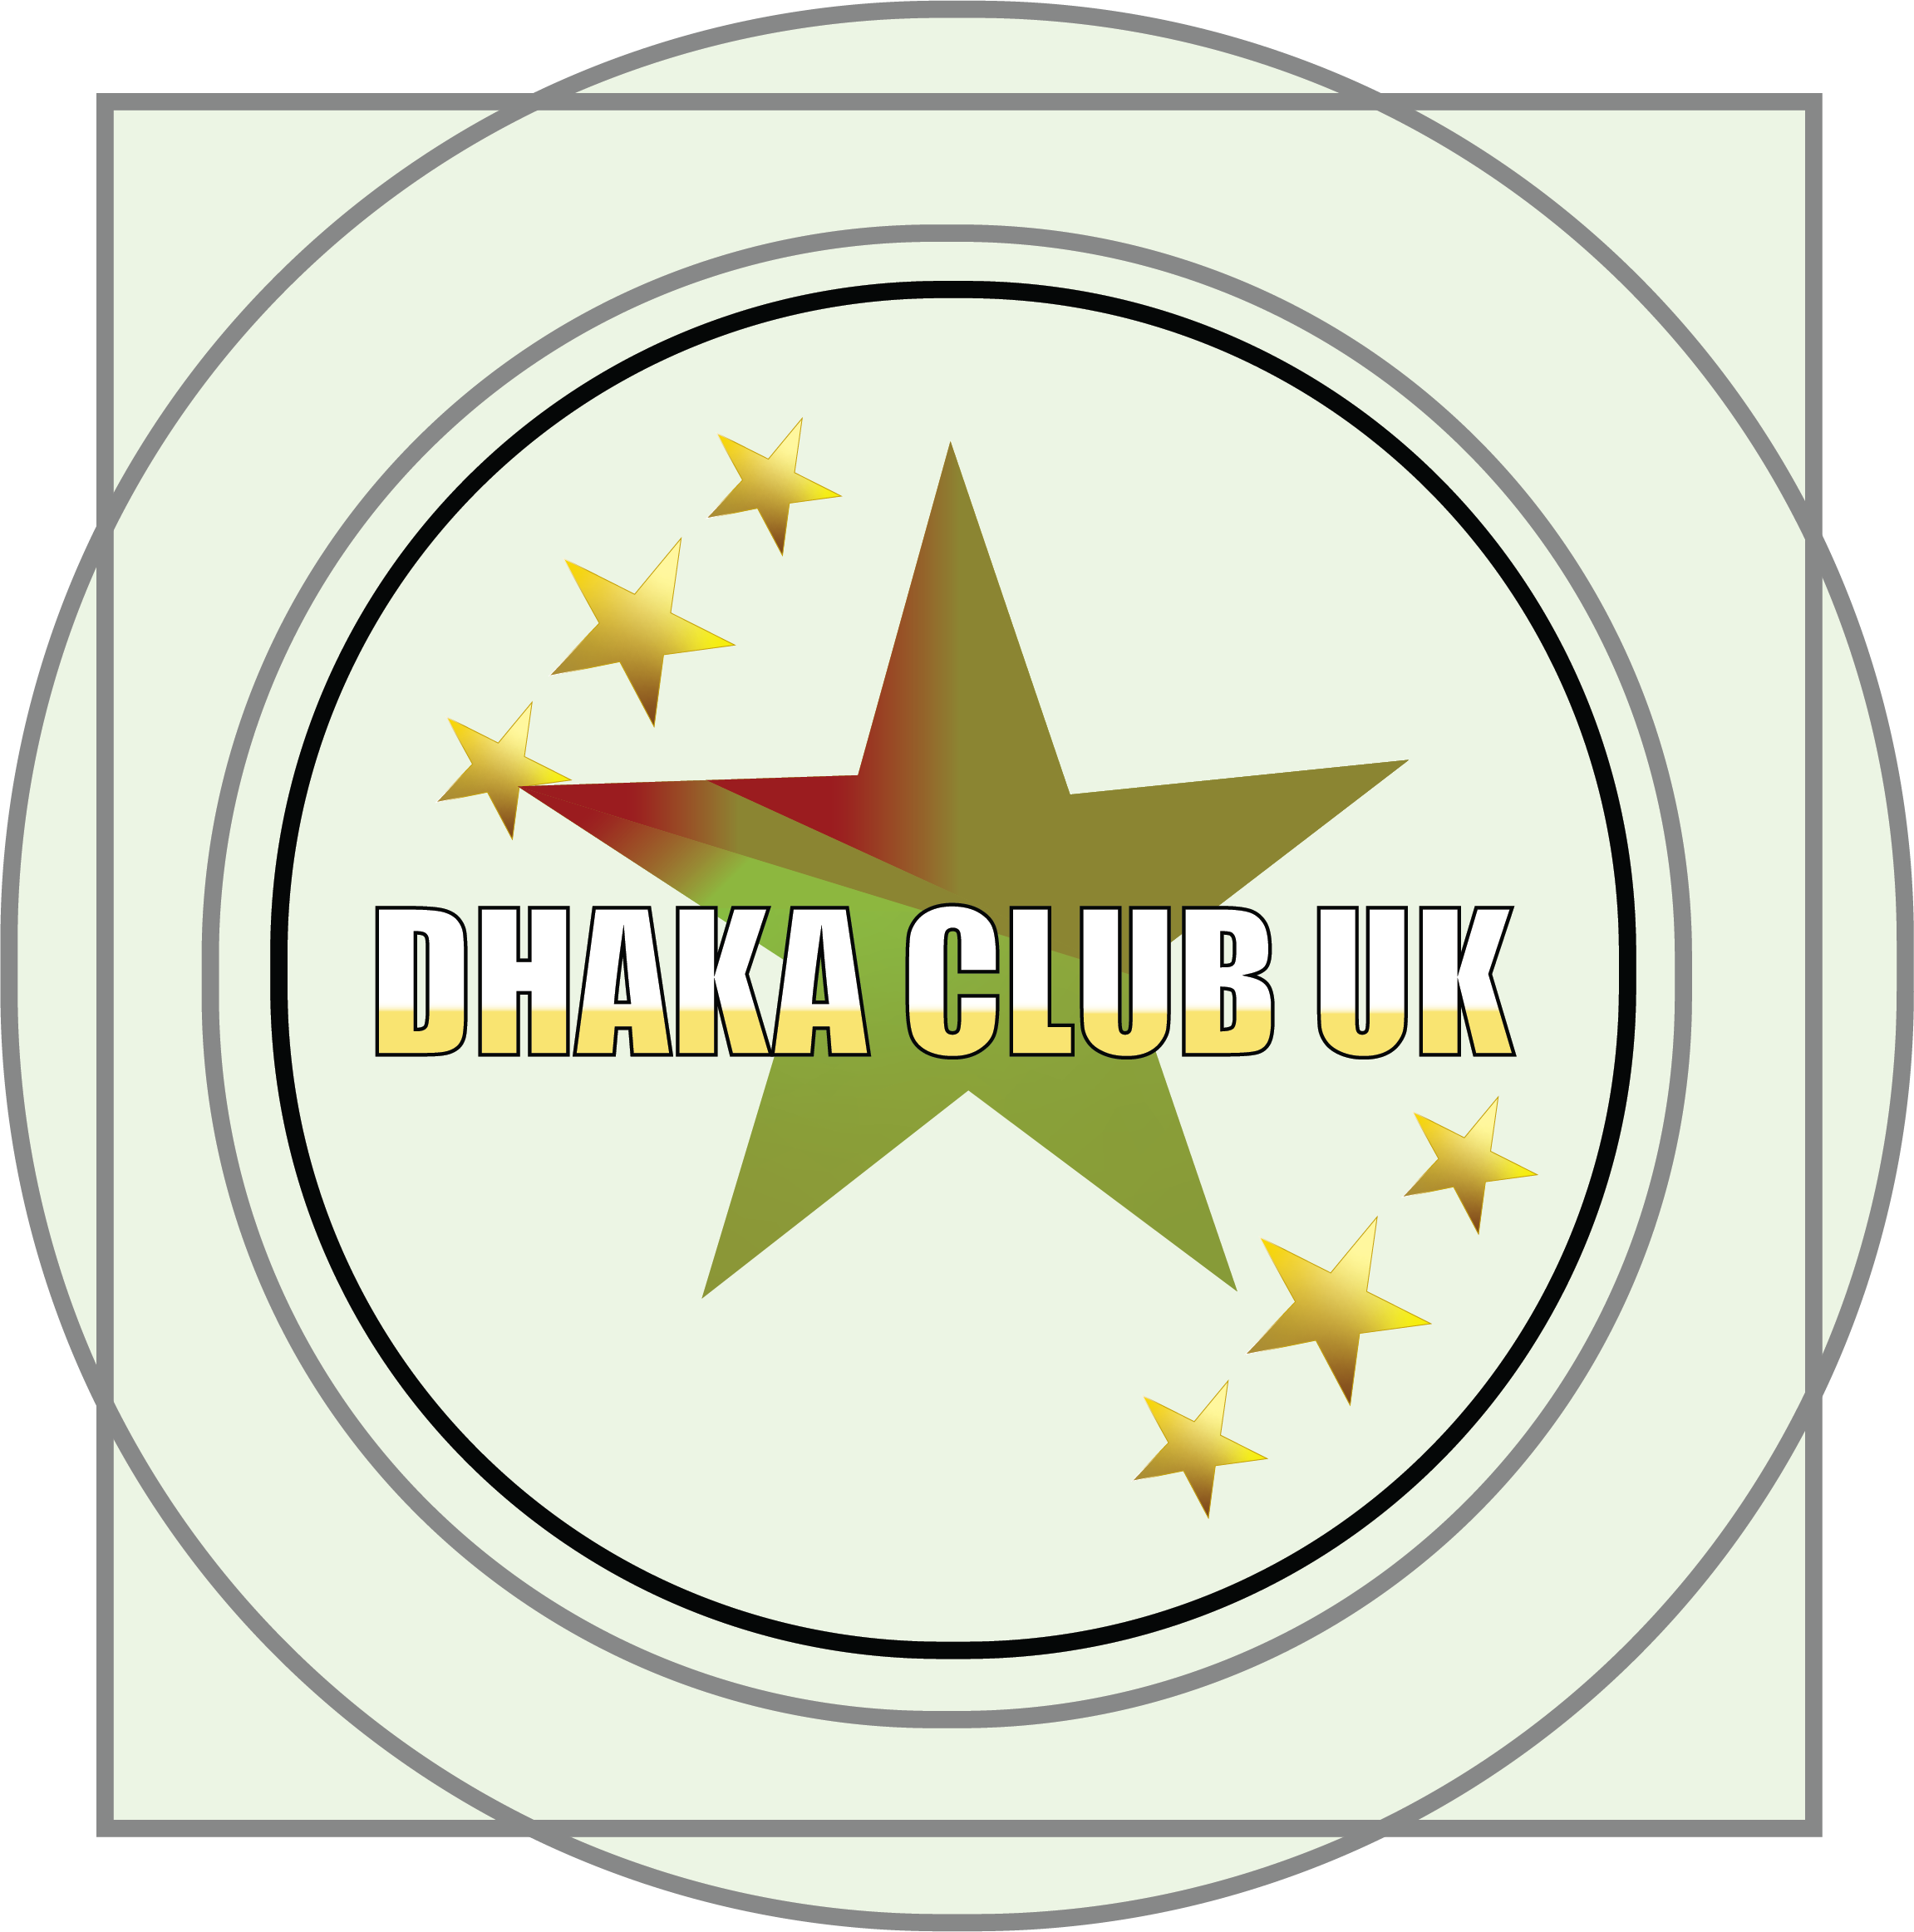 DHAKA CLUB UK